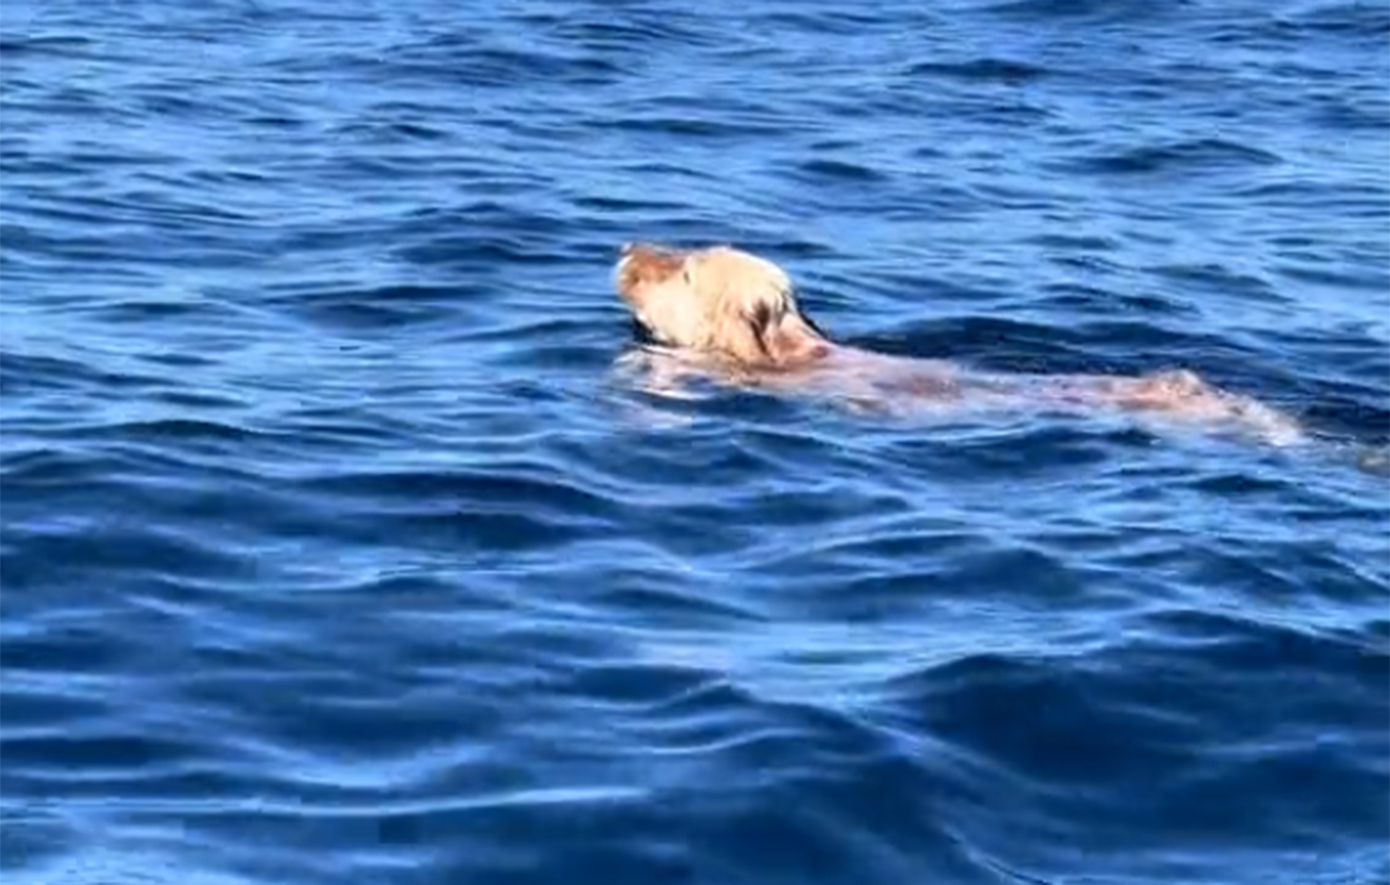 Έκανε καγιάκ και έσωσε έναν σκύλο που τον είδε να κολυμπά μεσοπέλαγα &#8211; Δείτε βίντεο